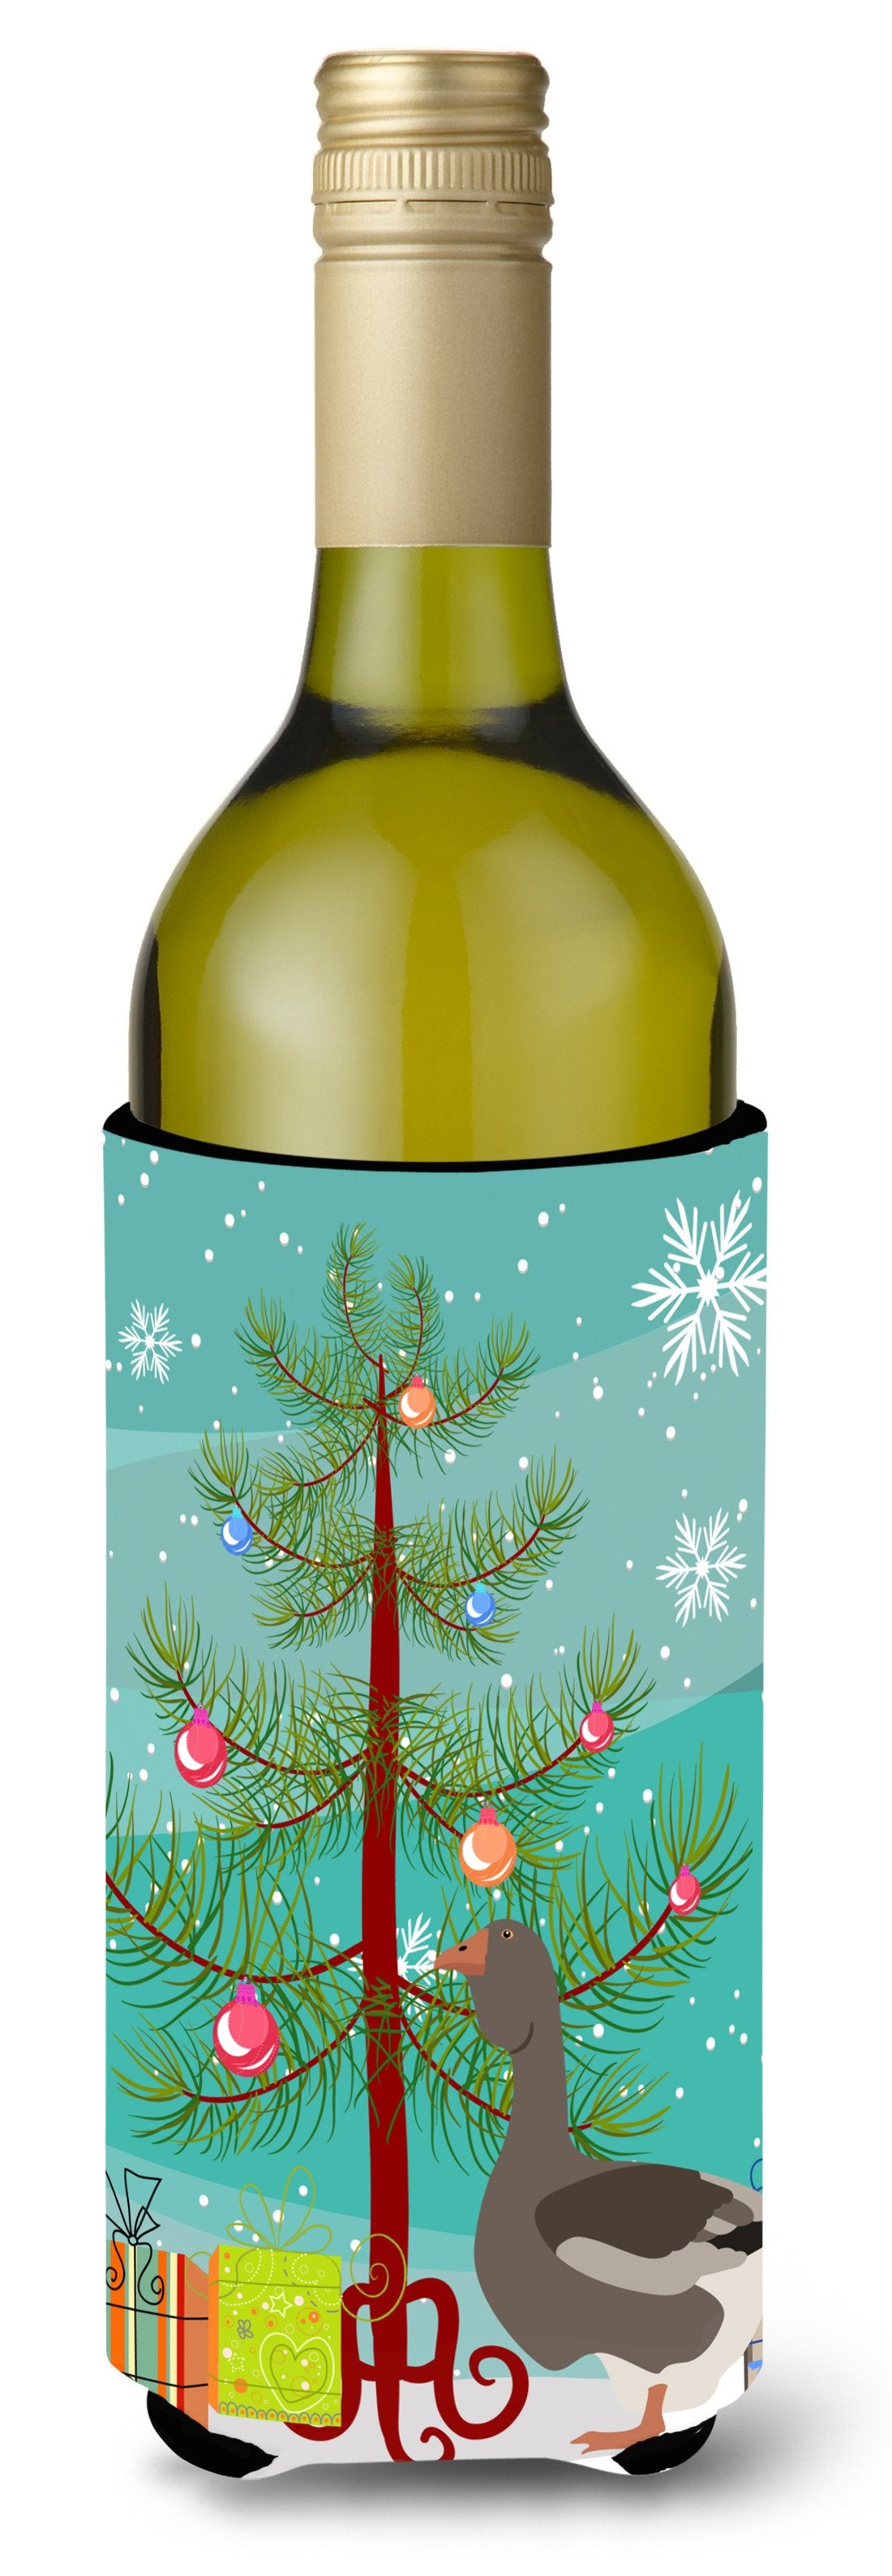 Toulouse Goose Christmas Wine Bottle Beverge Insulator Hugger BB9264LITERK by Caroline's Treasures